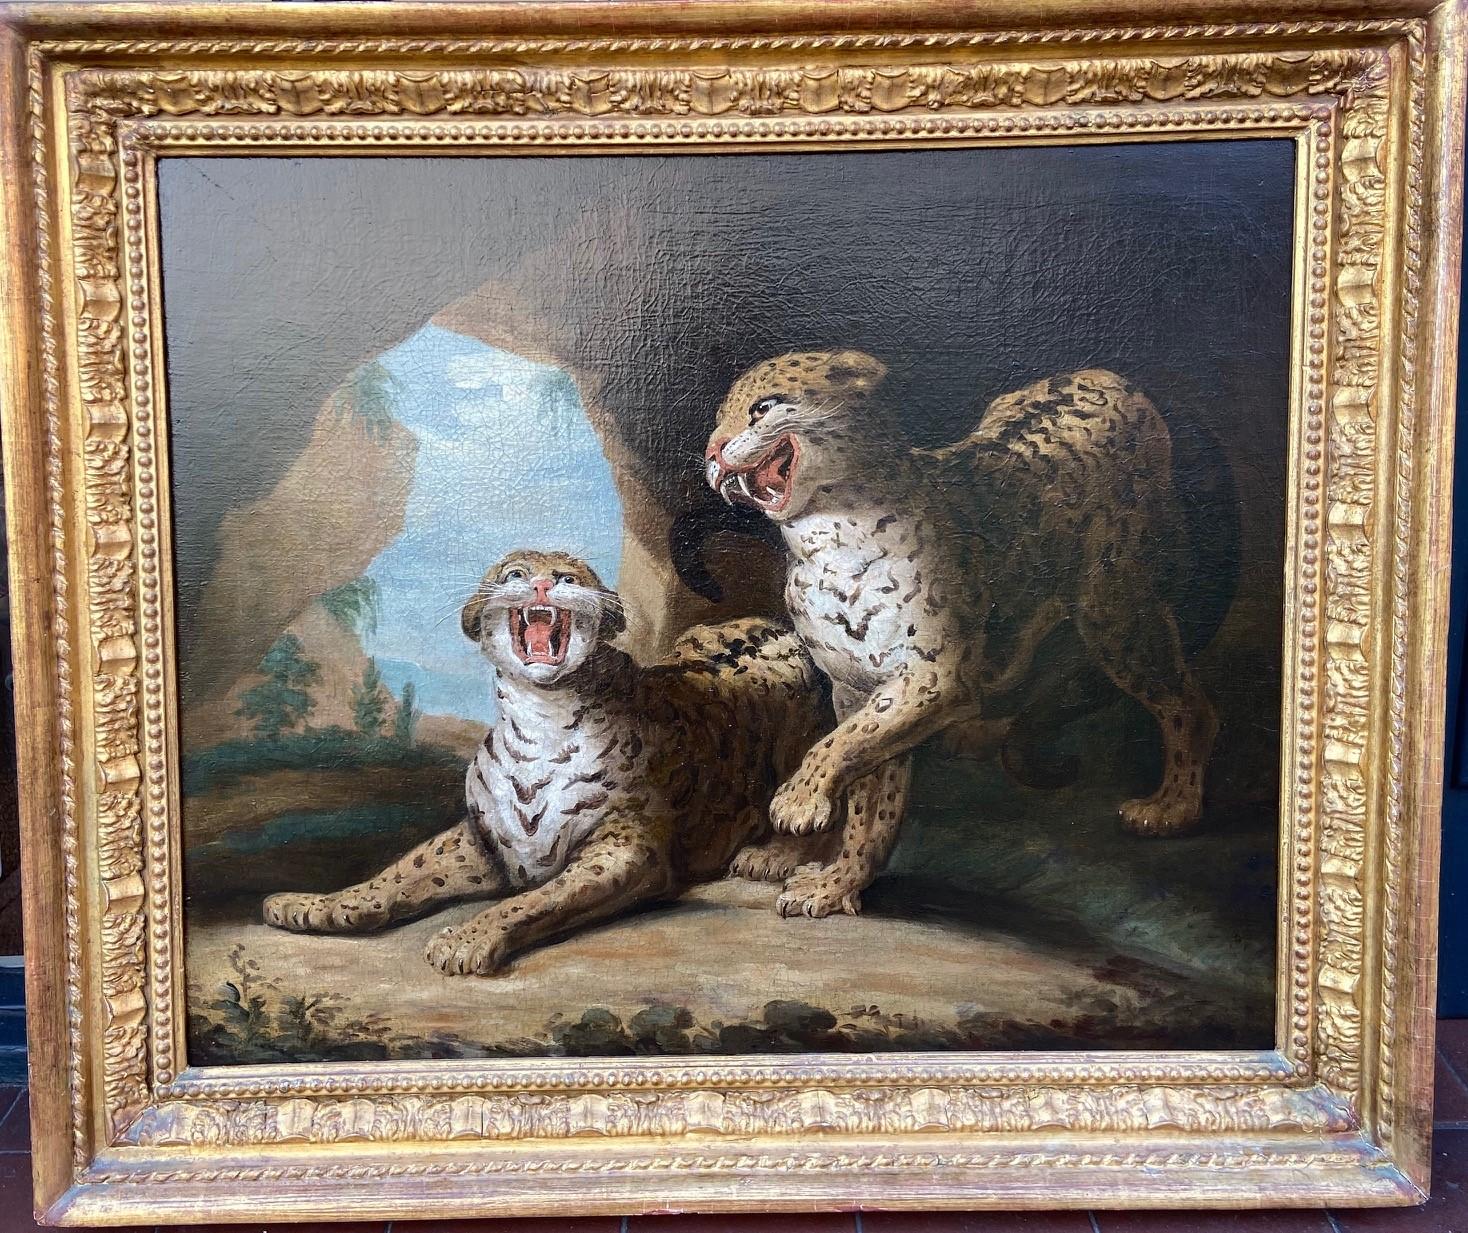 18th century animal paintings